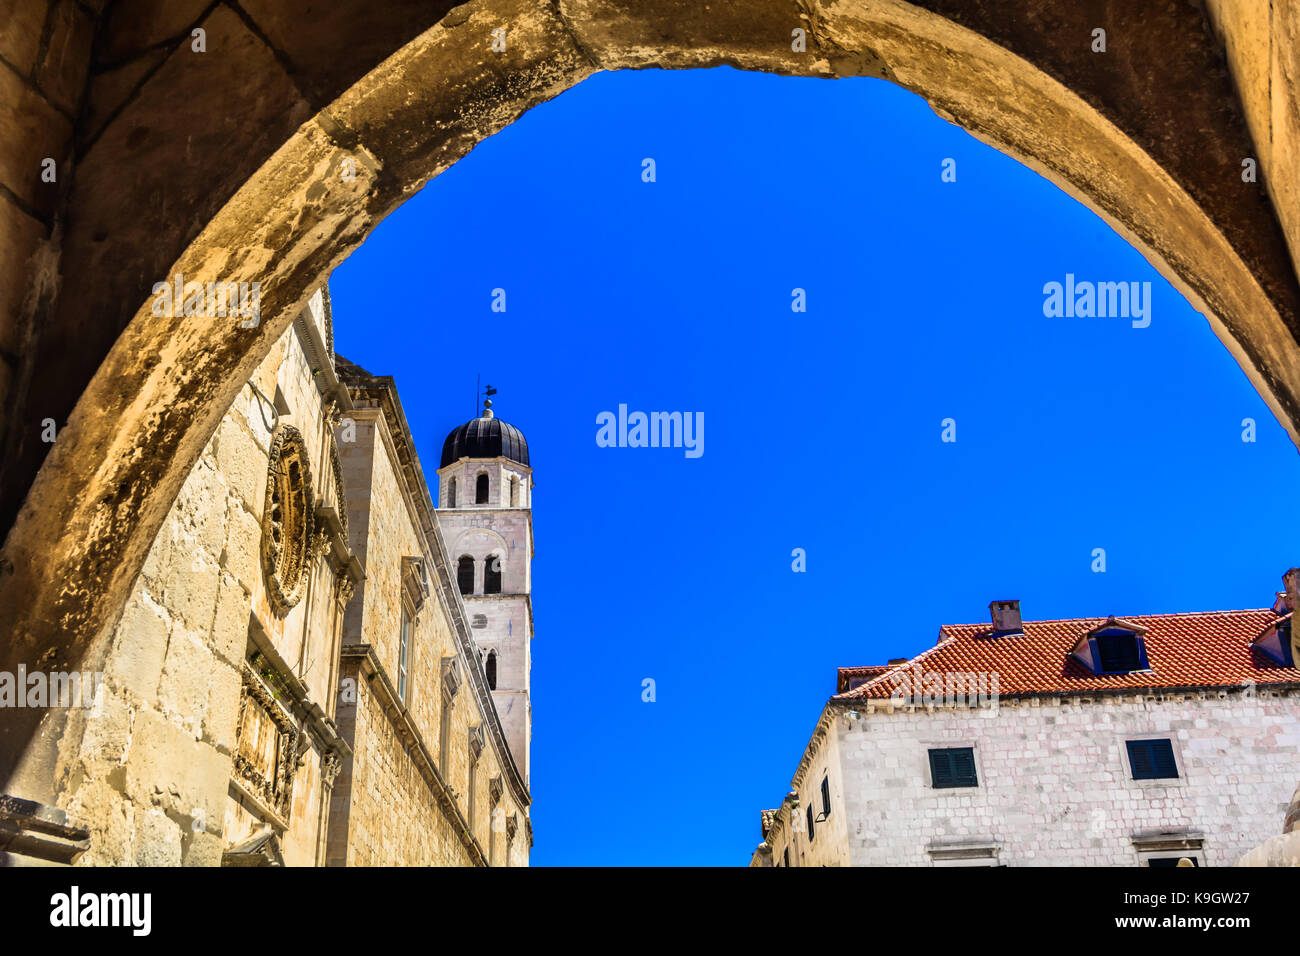 Marmo scenario storico nella città vecchia di Dubrovnik, dettagli architettonici. Foto Stock